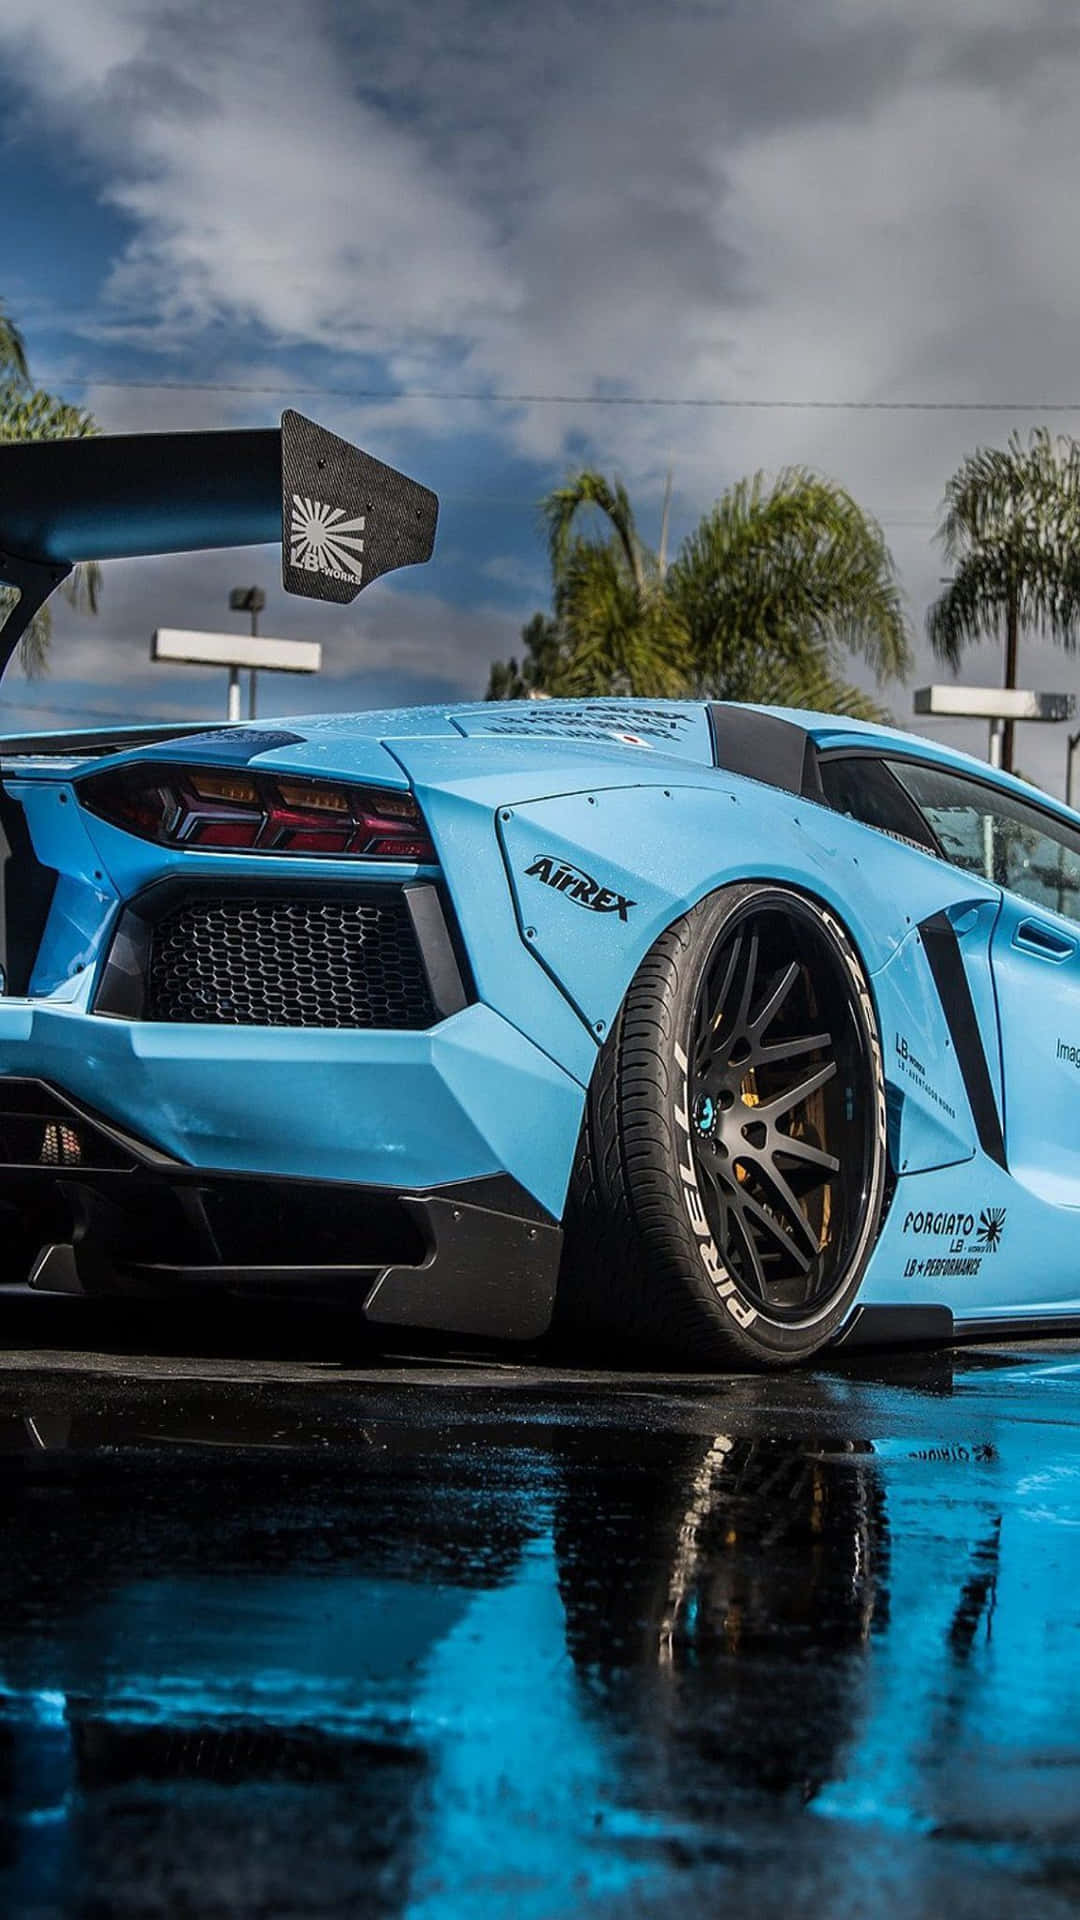 Enblå Lamborghini Gt4 Parkerad I Regnet. Wallpaper